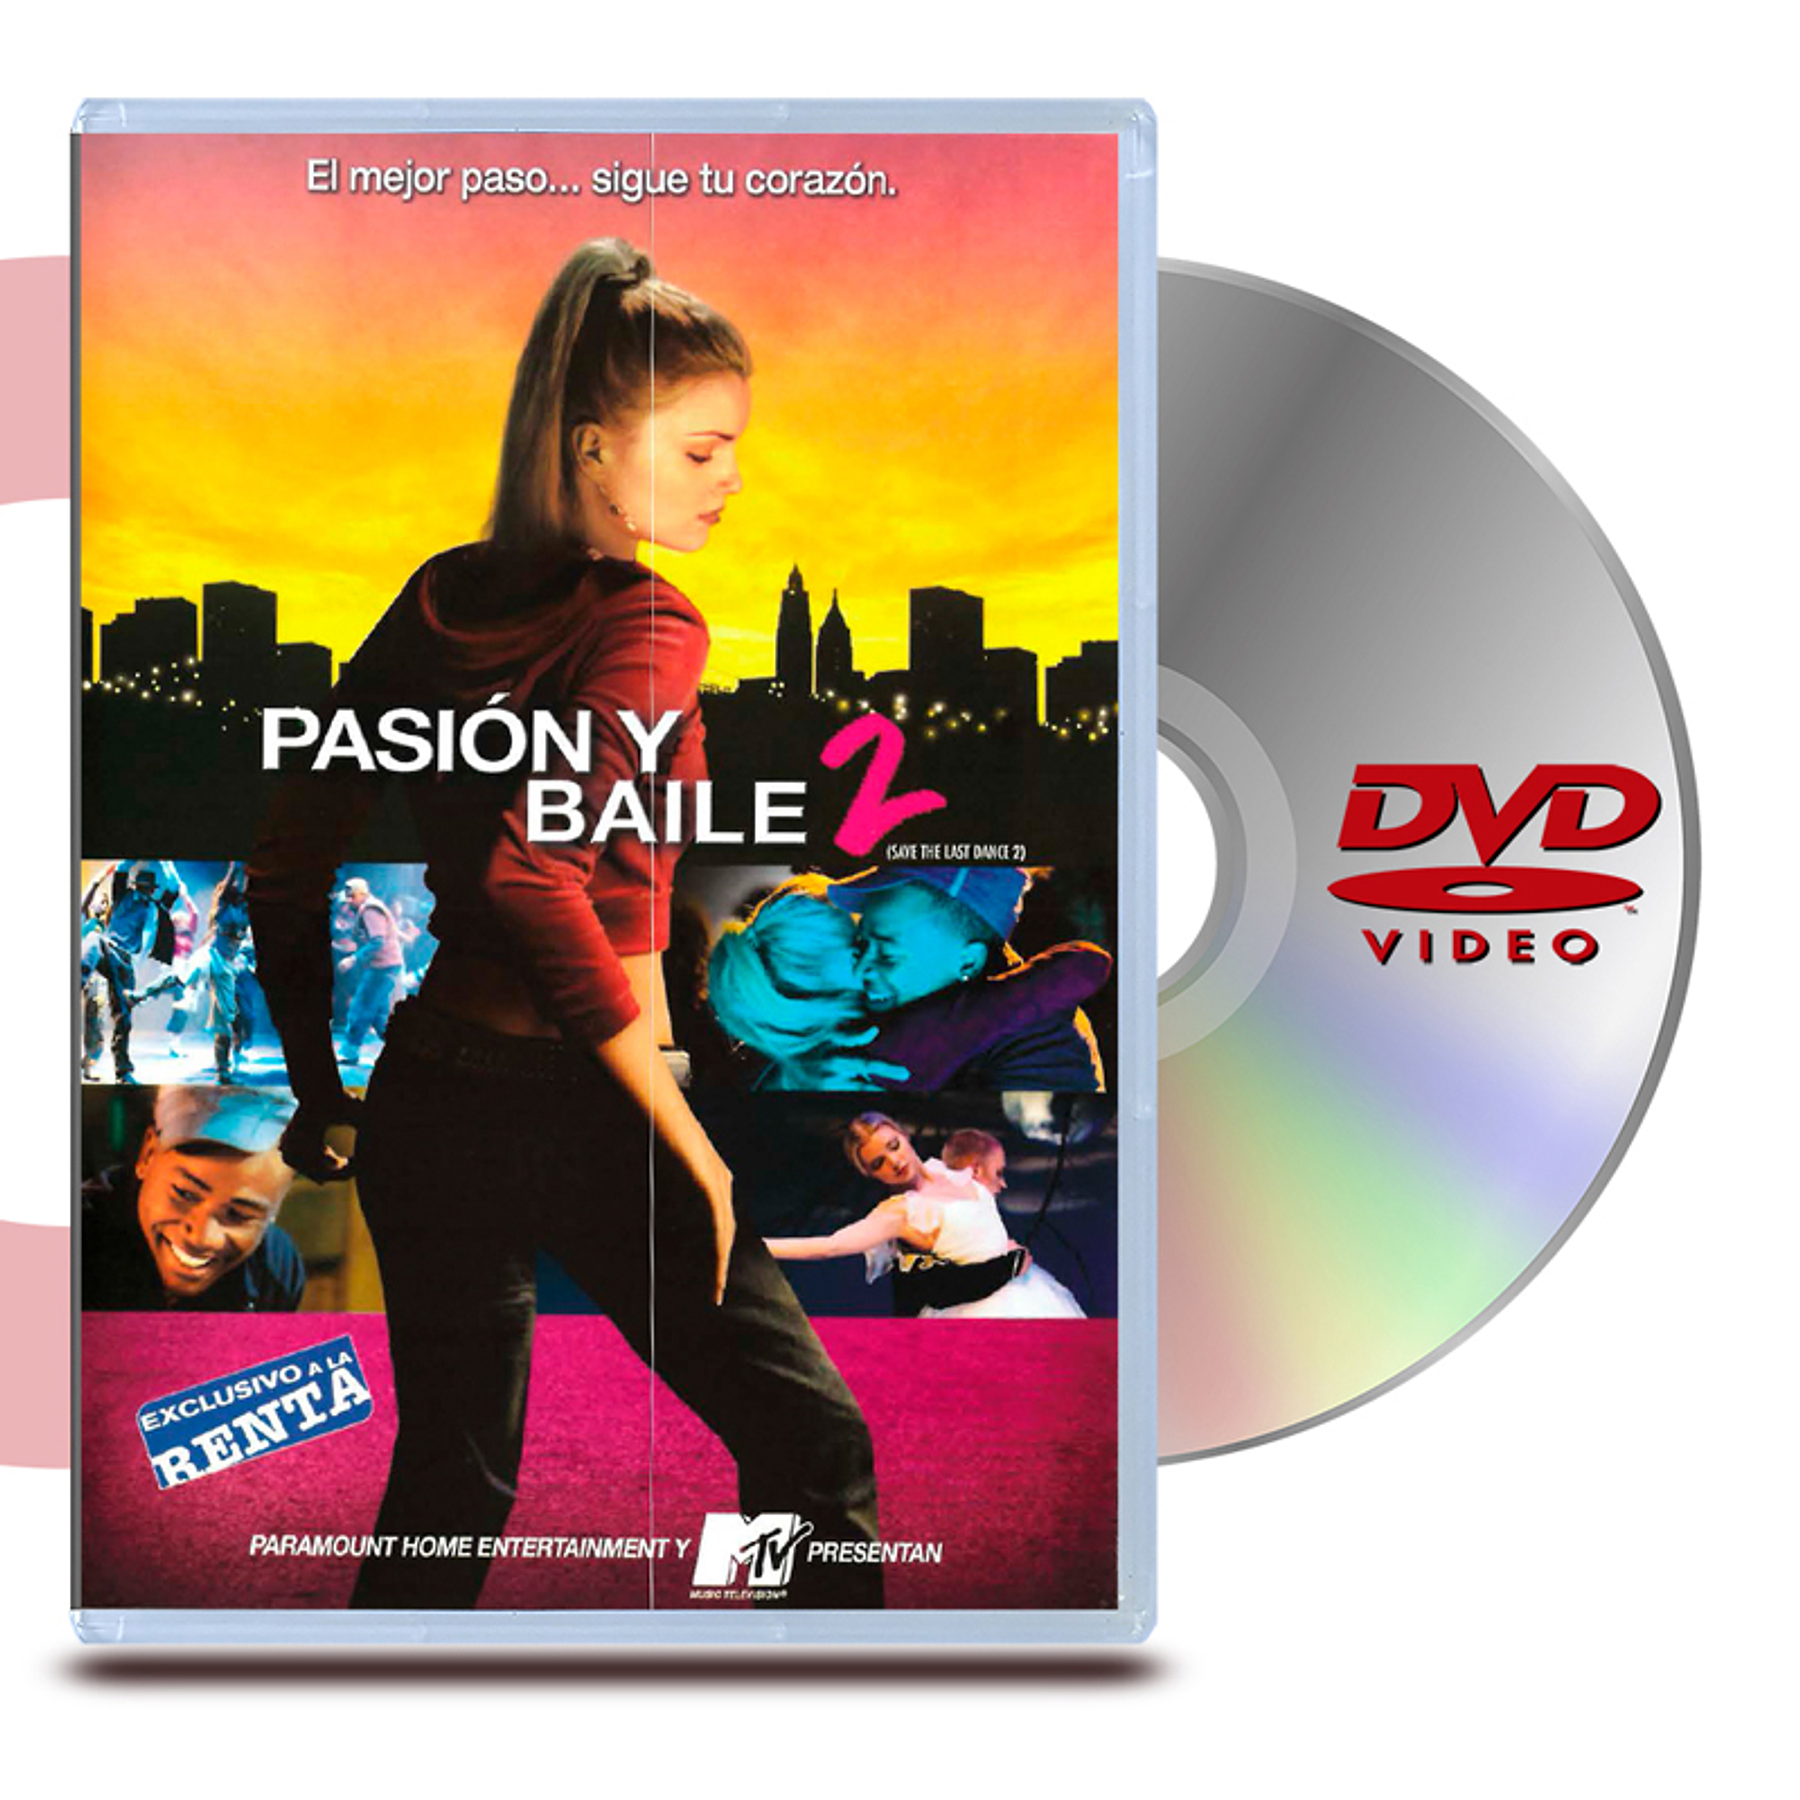 DVD PASION Y BAILE 2